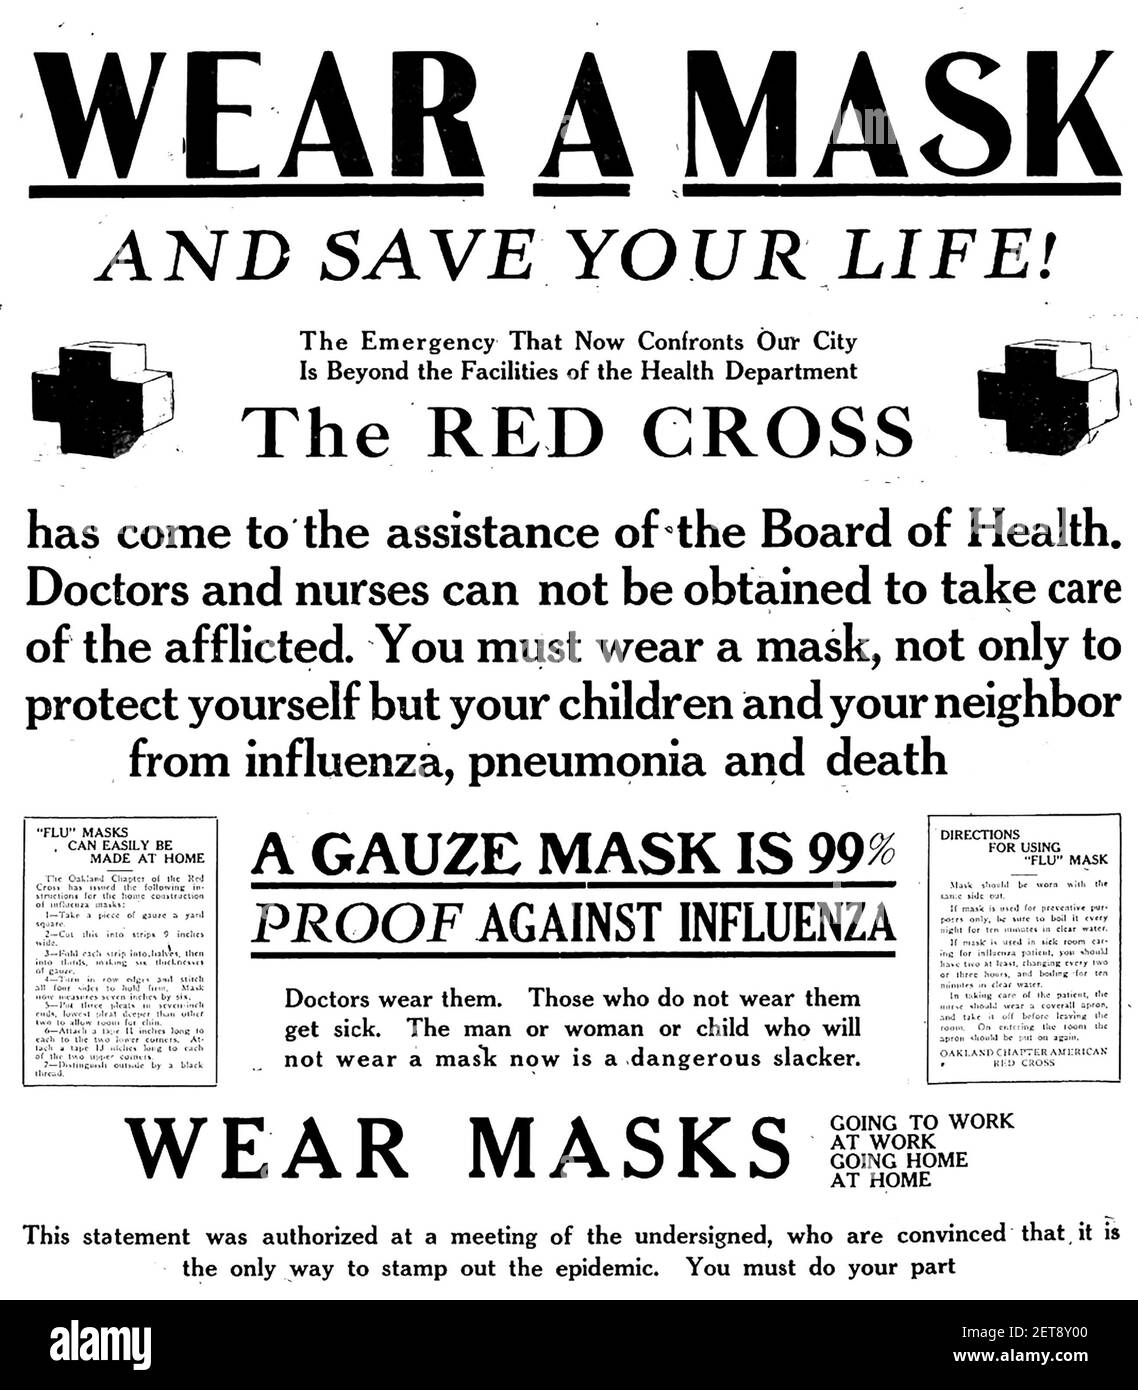 PANDÉMIE DE GRIPPE ESPAGNOLE 1918. Une affiche de la Croix-Rouge américaine exhortant à porter des masques Banque D'Images